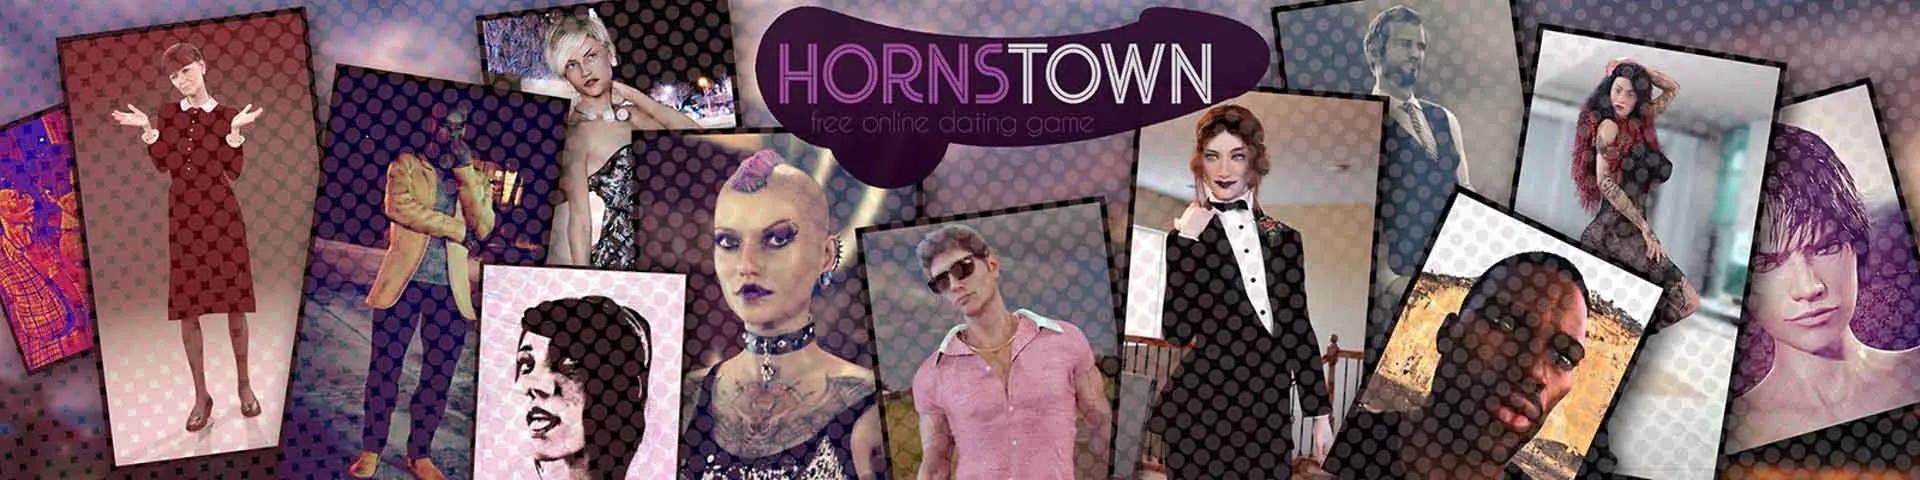 Hard Times in Hornstown 3d Sexspiel, Pornospiel, Erotikspiel